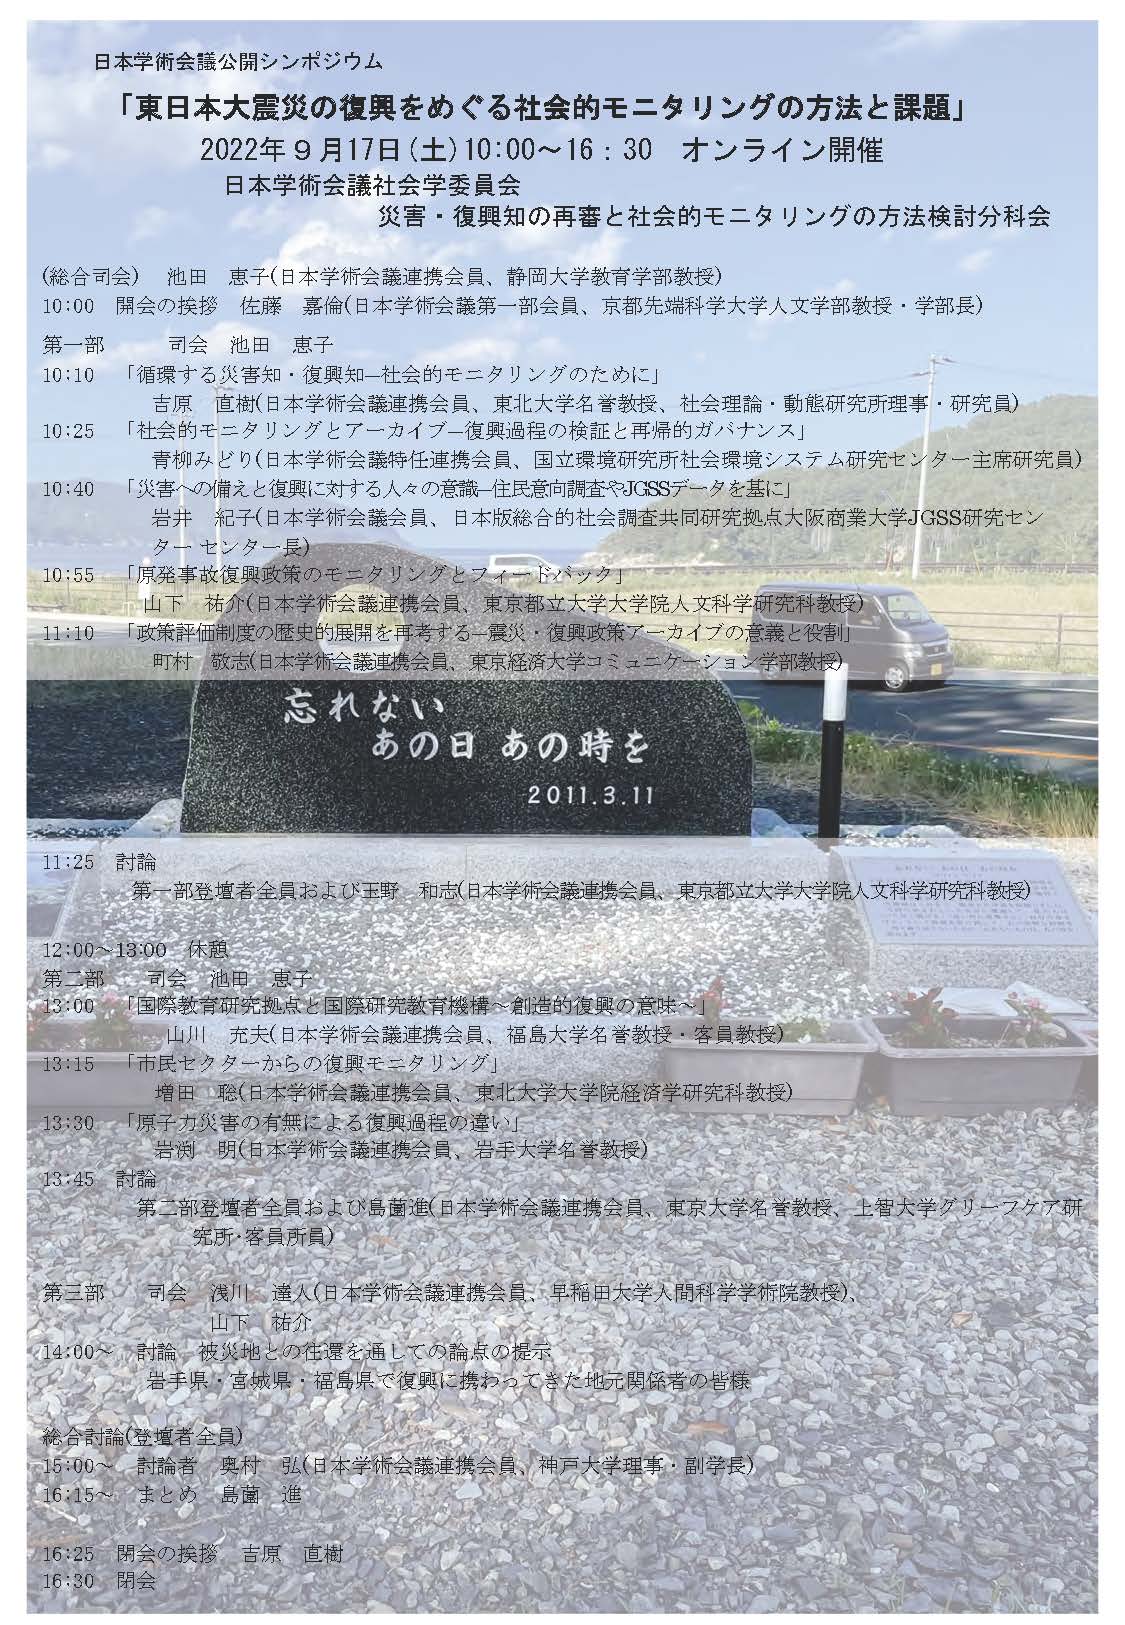 公開シンポジウム「東日本大震災の復興をめぐる社会的モニタリングの